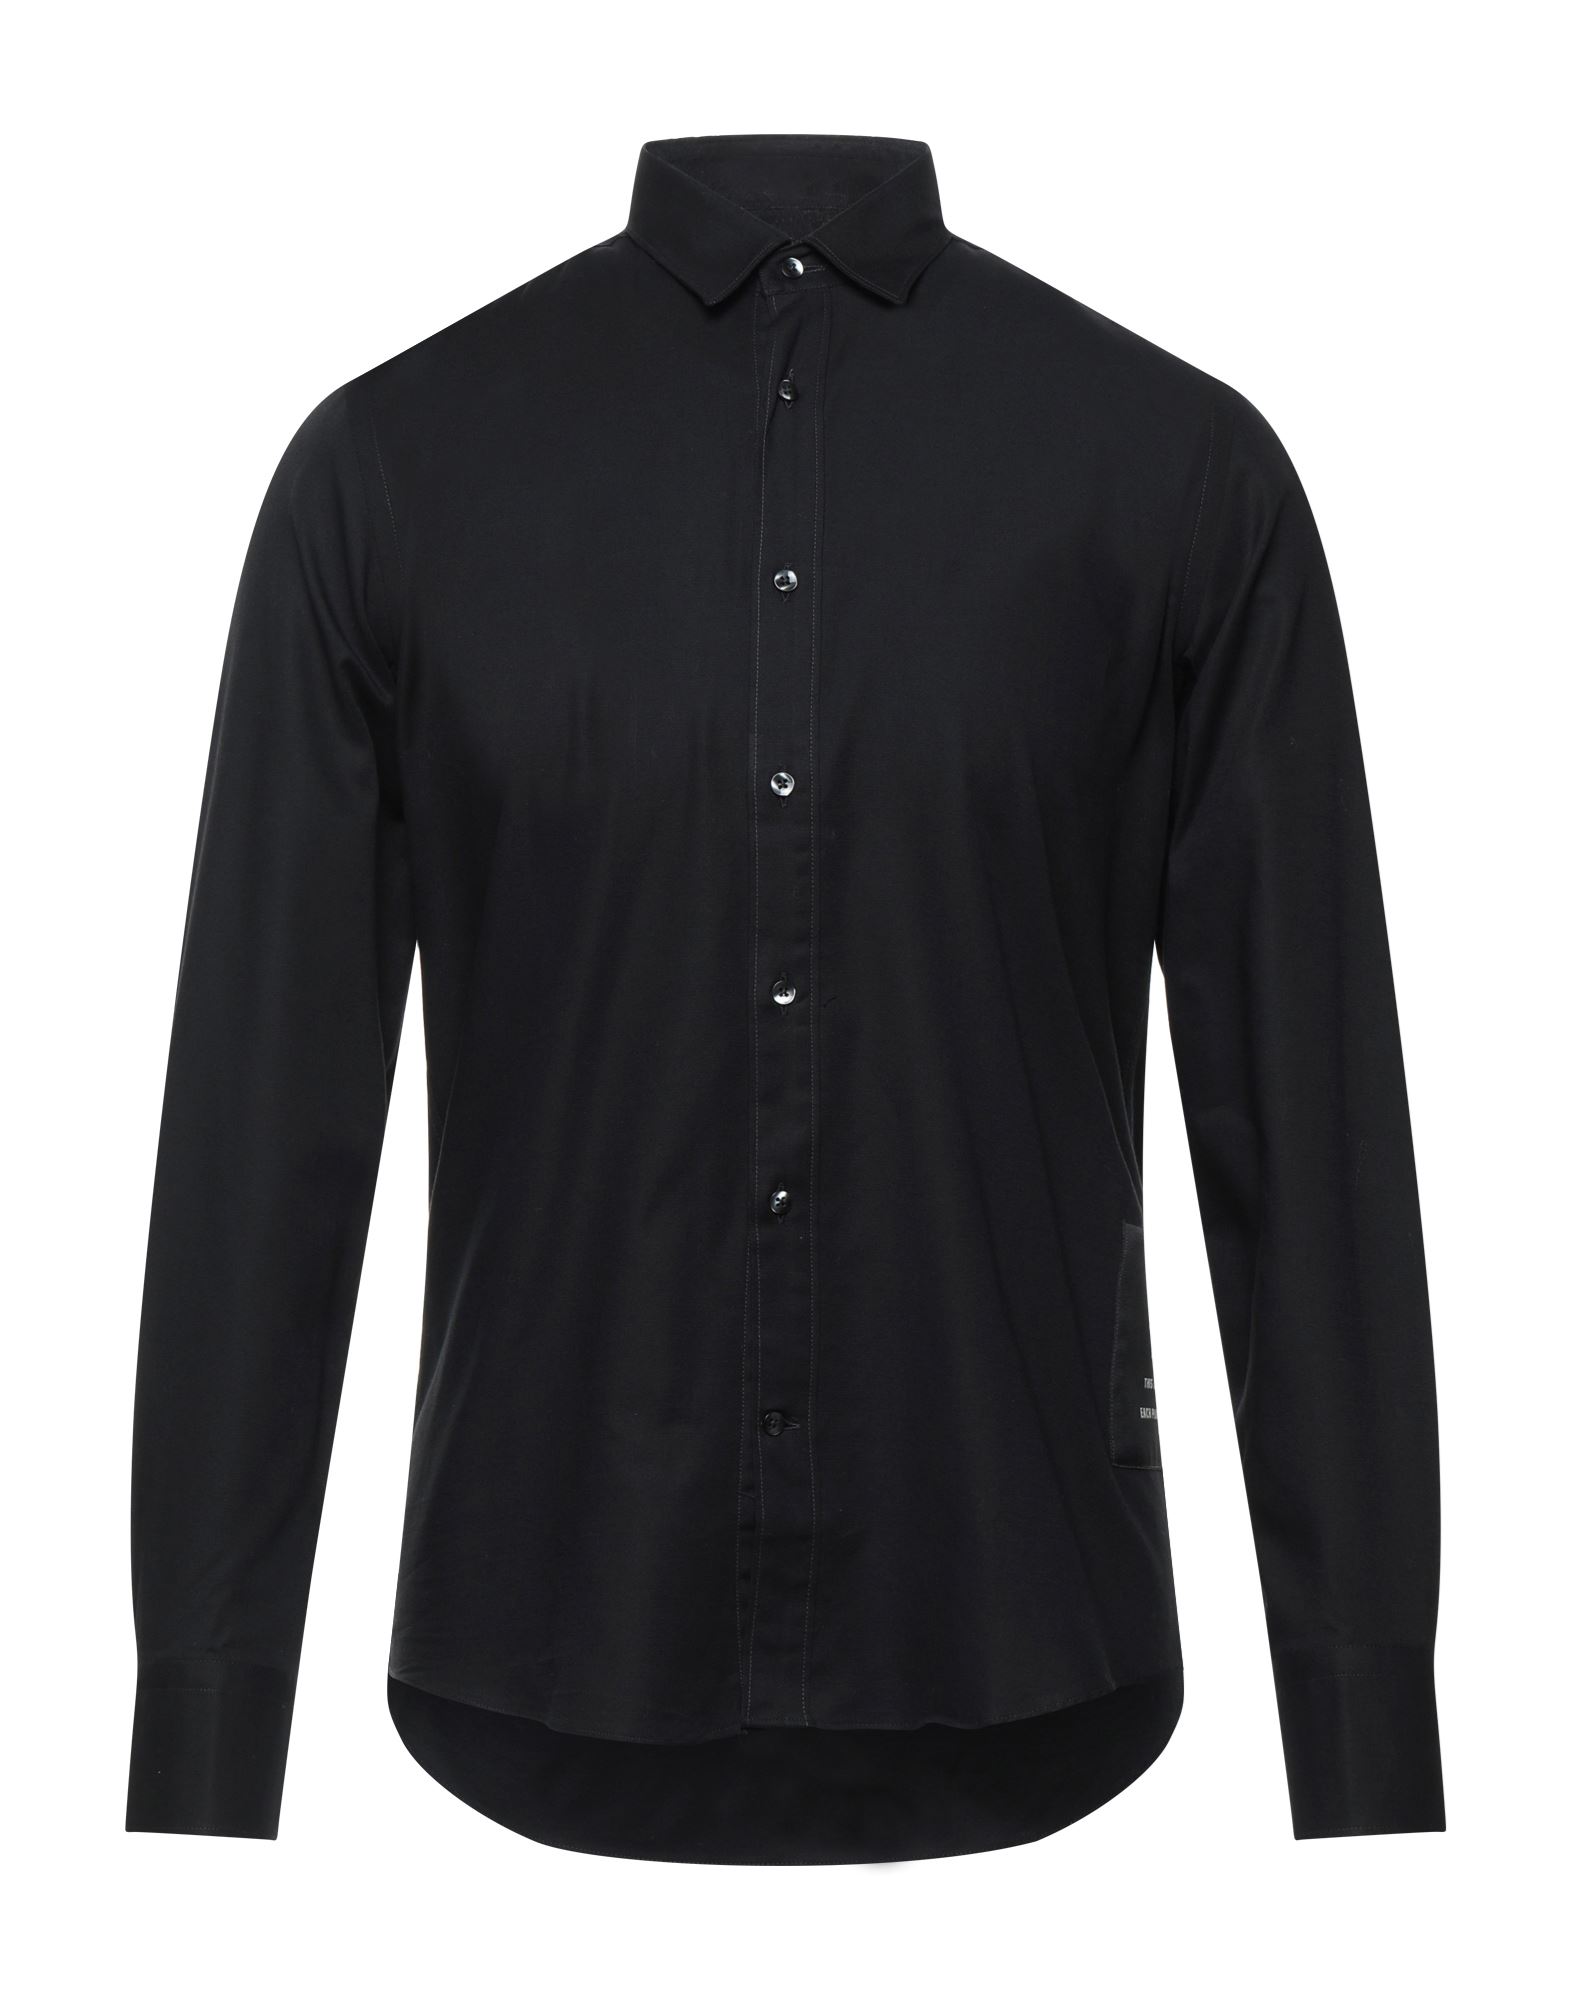 Shop Low Brand Man Shirt Black Size 2 Cotton